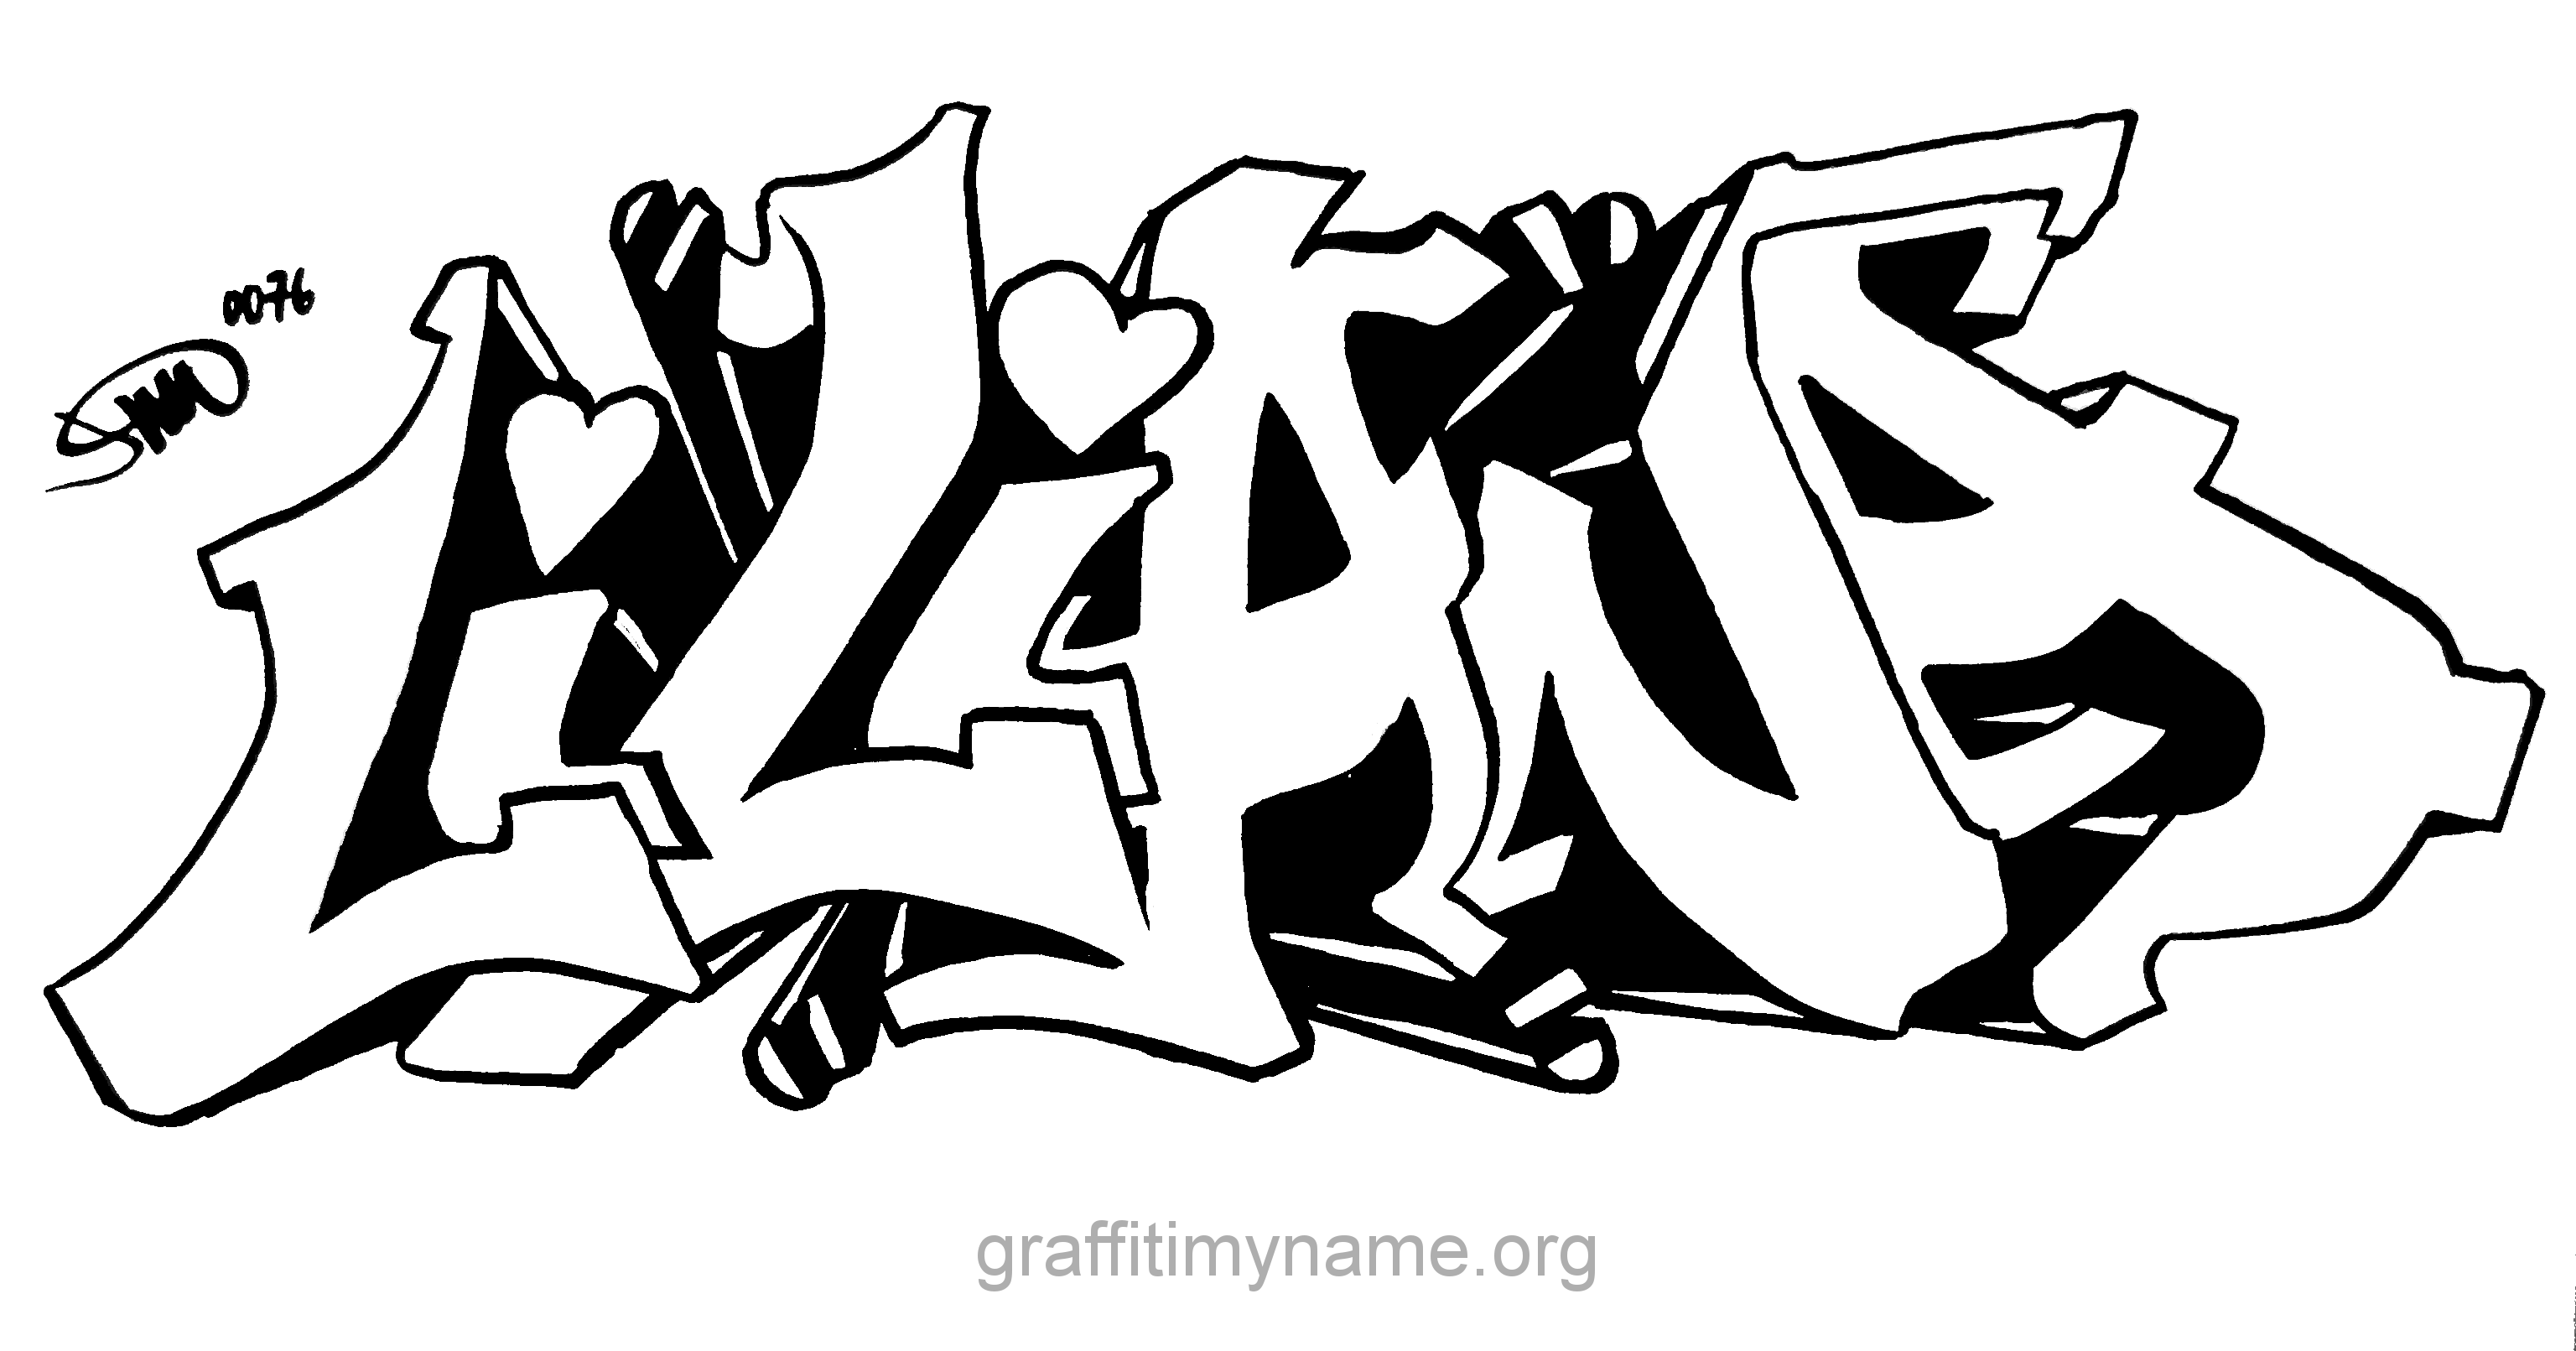 Имя маркером. Граффити на бумаге. Граффити рисунки карандашом для начинающих. Граффити шрифты. Шрифты для граффити для новичков.